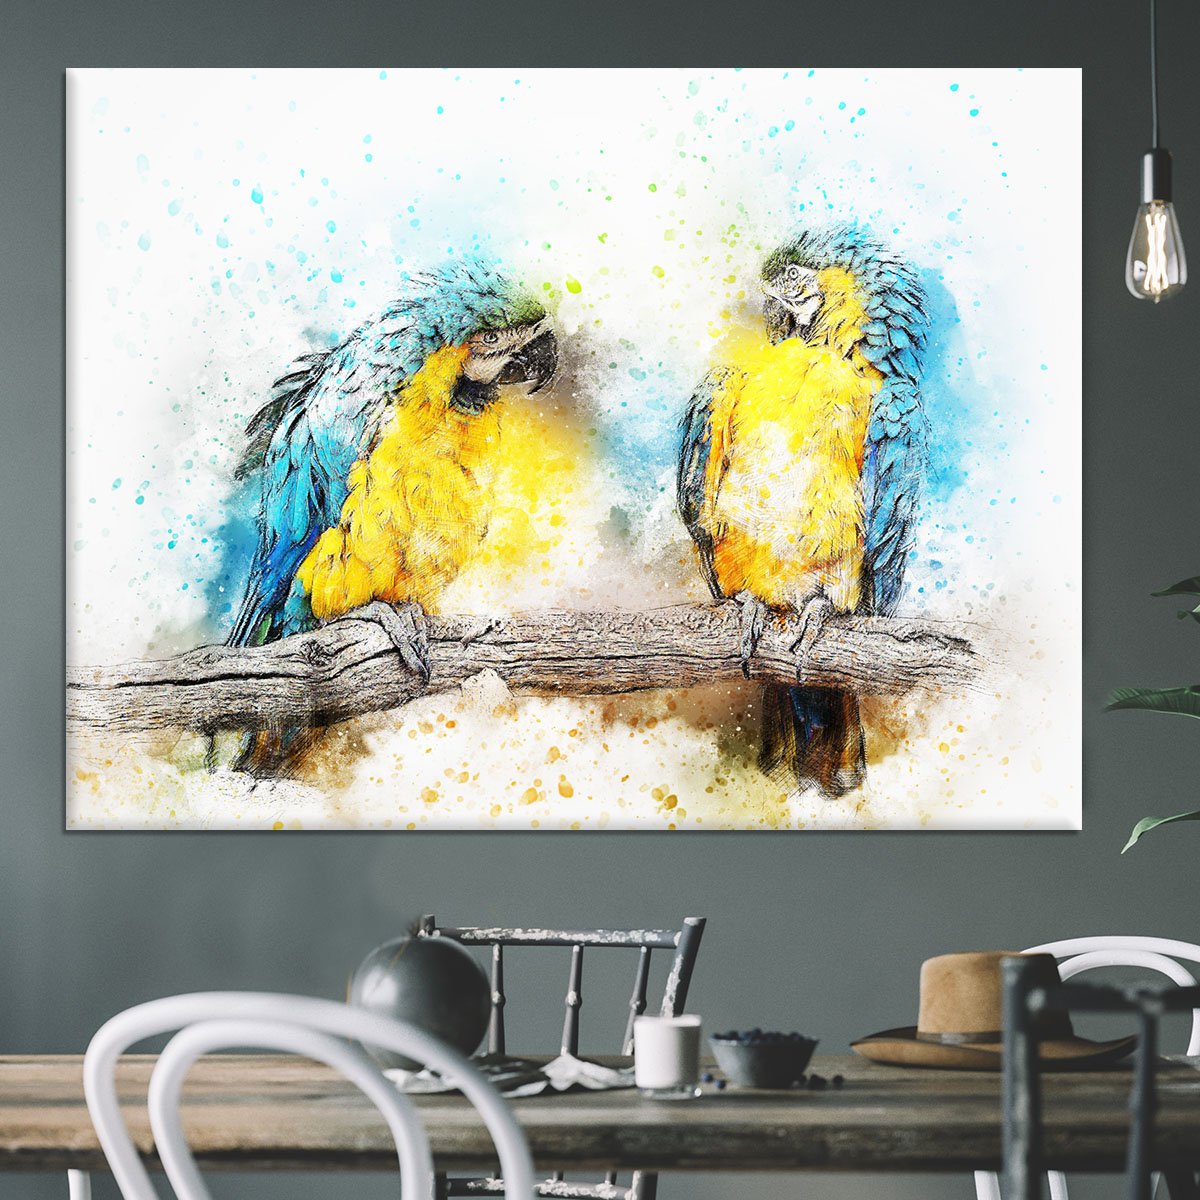 Watercolour Parrots Canvas Print or Poster